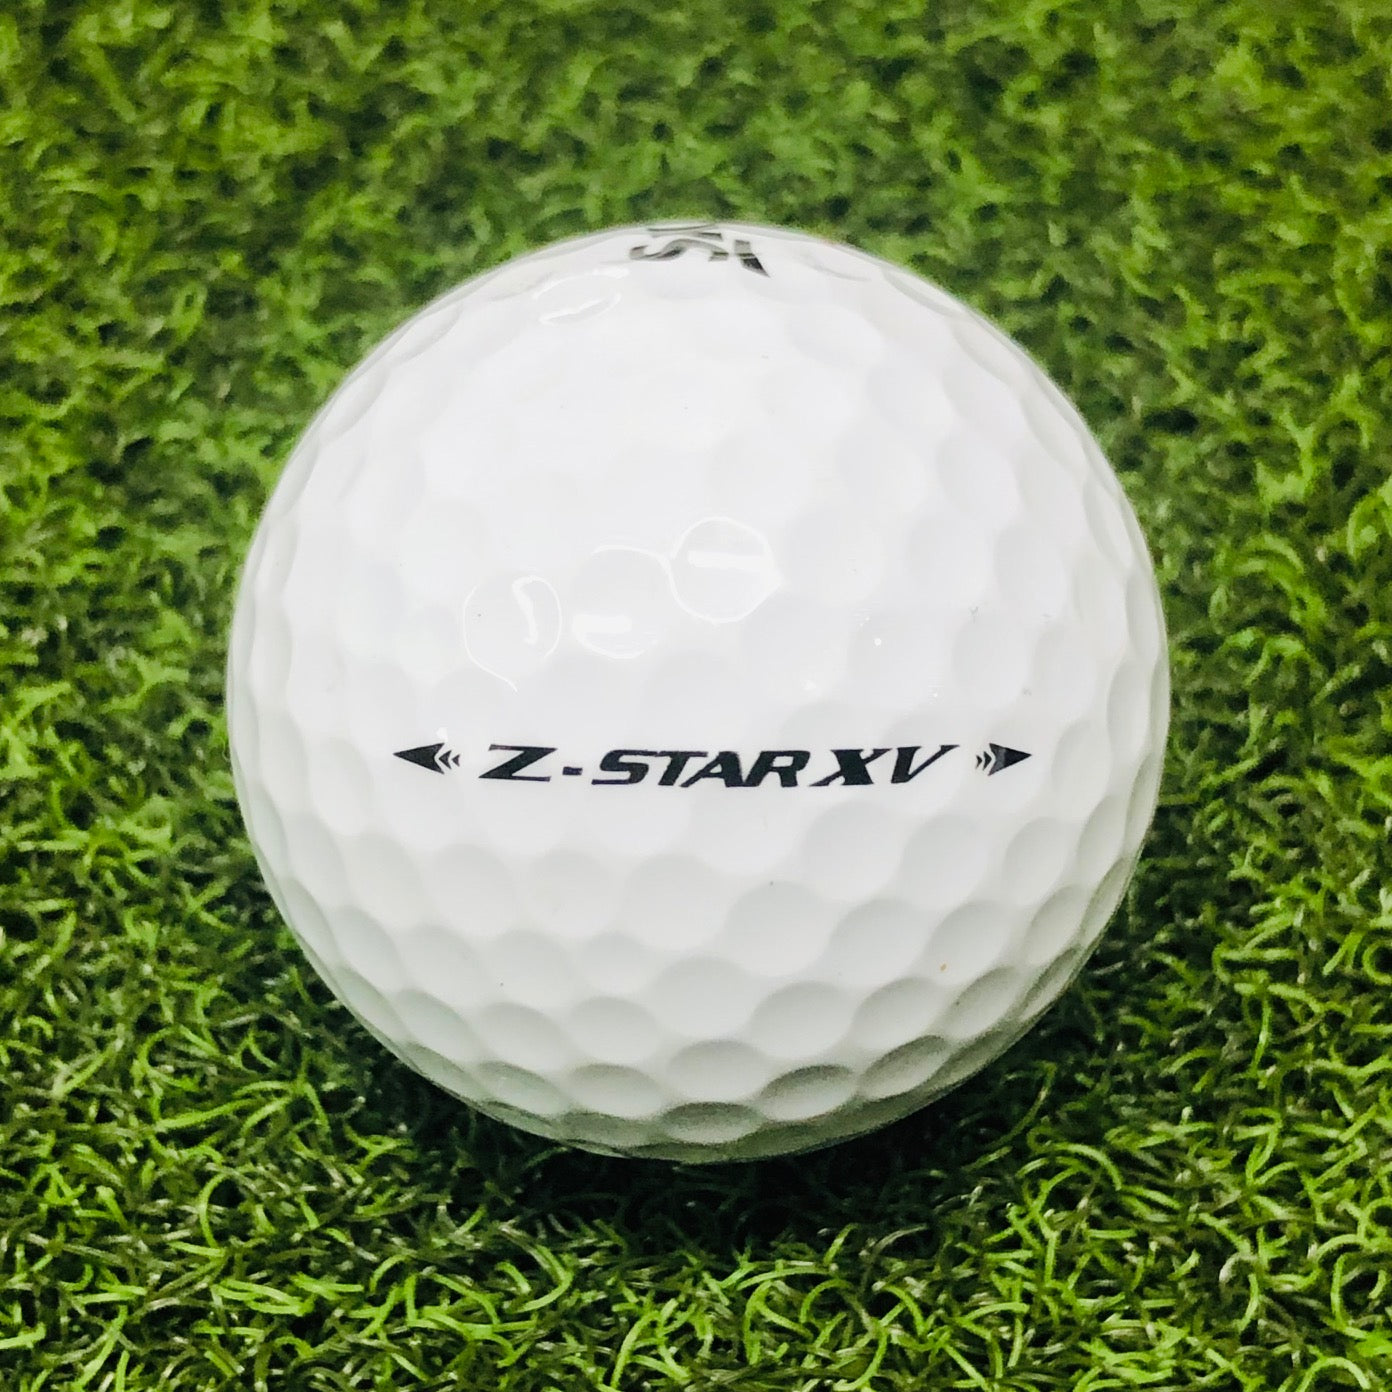 Srixon Z-Star XV Used Golf Balls – Shaggy Golf Balls